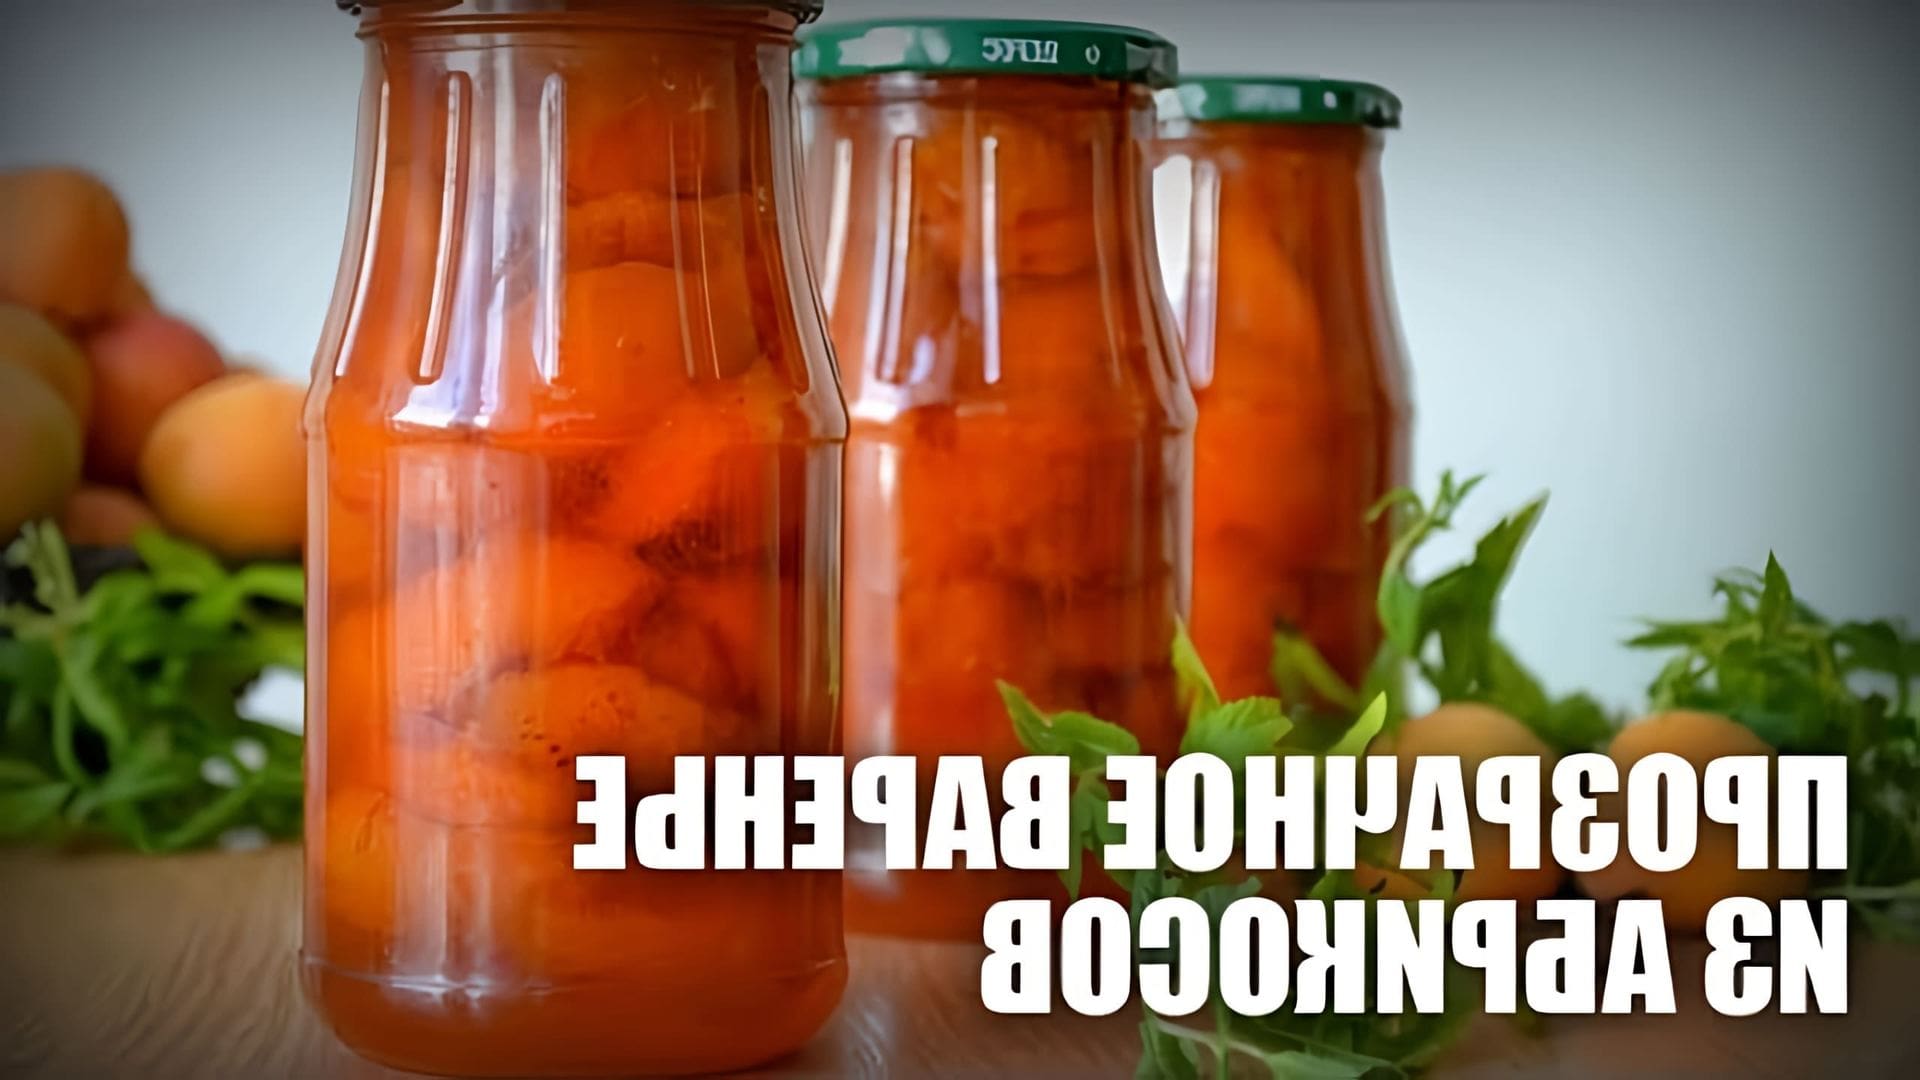 В данном видео представлен рецепт приготовления прозрачного варенья из абрикосов